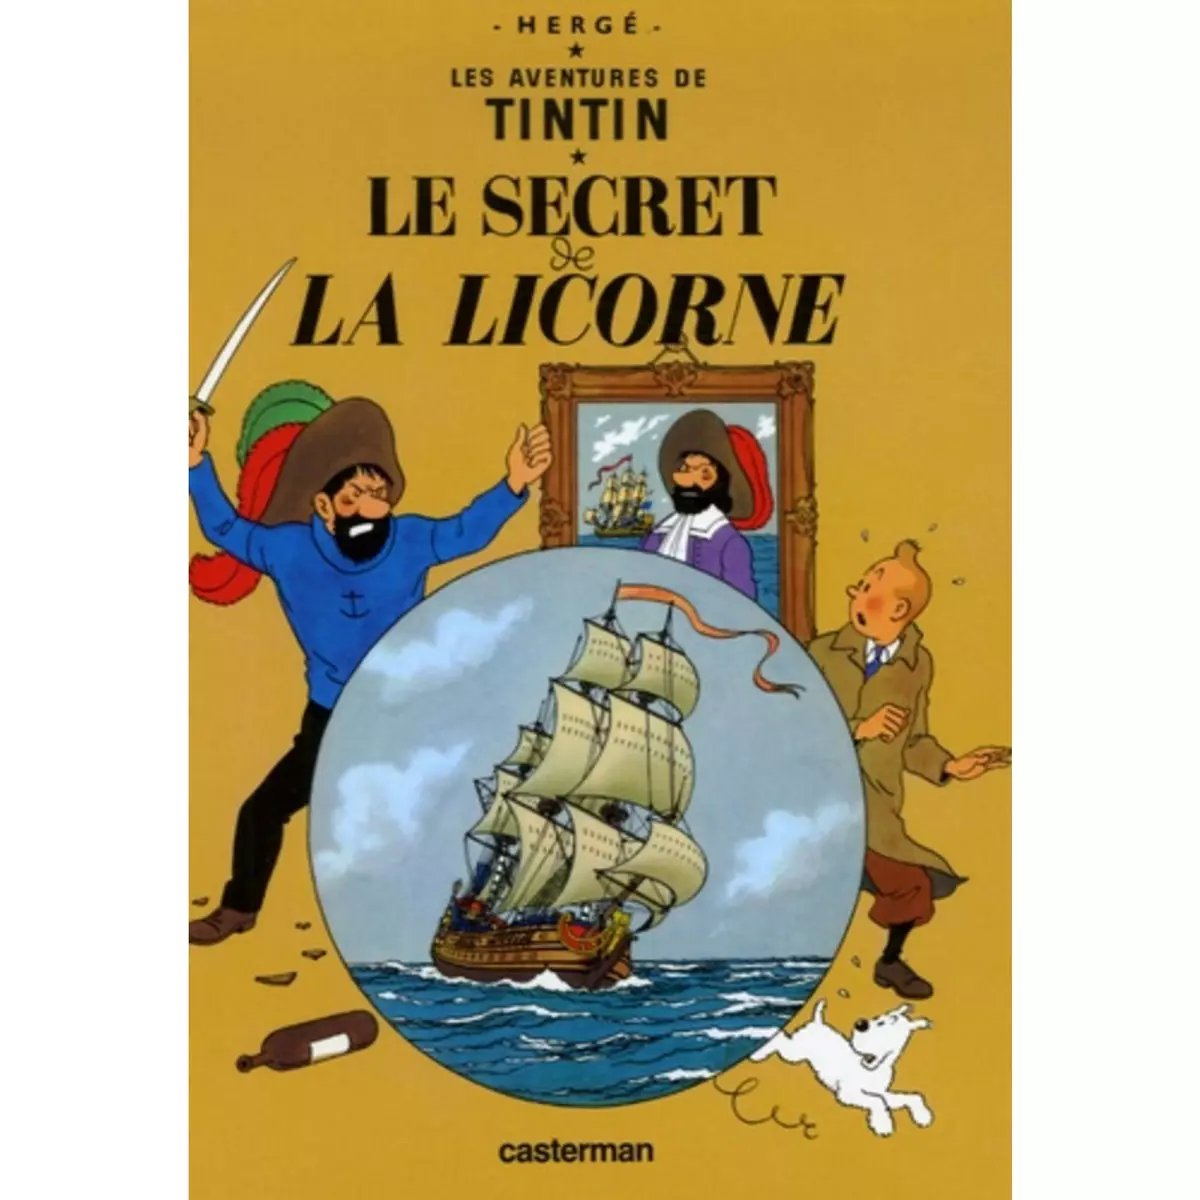  LES AVENTURES DE TINTIN TOME 11 : LE SECRET DE LA LICORNE. MINI-ALBUM, Hergé